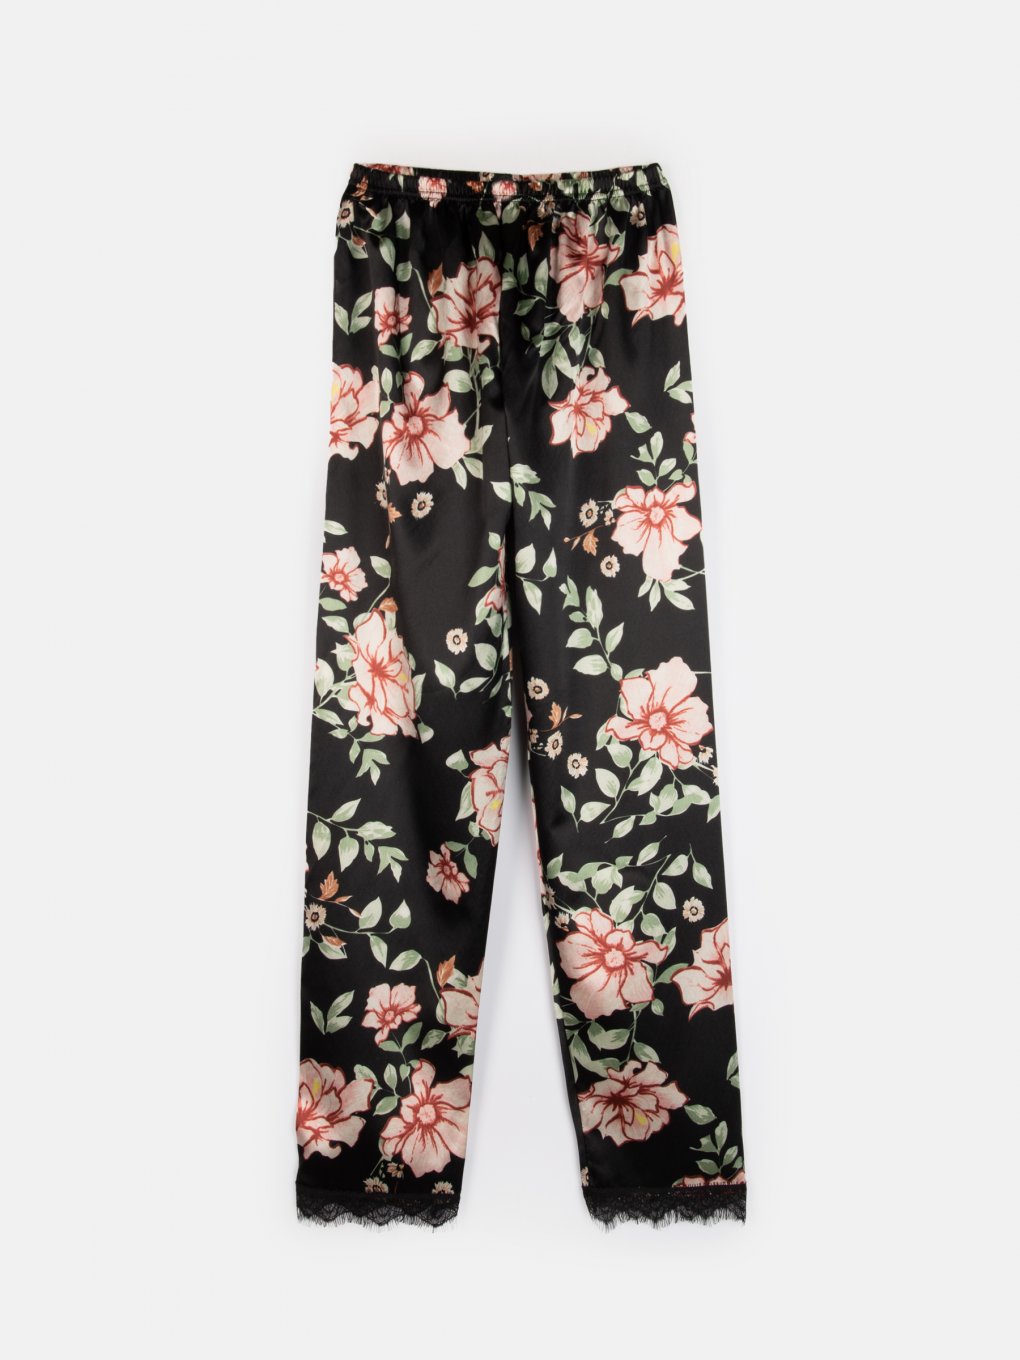 Květované saténové dámské pyžamvé kalhoty